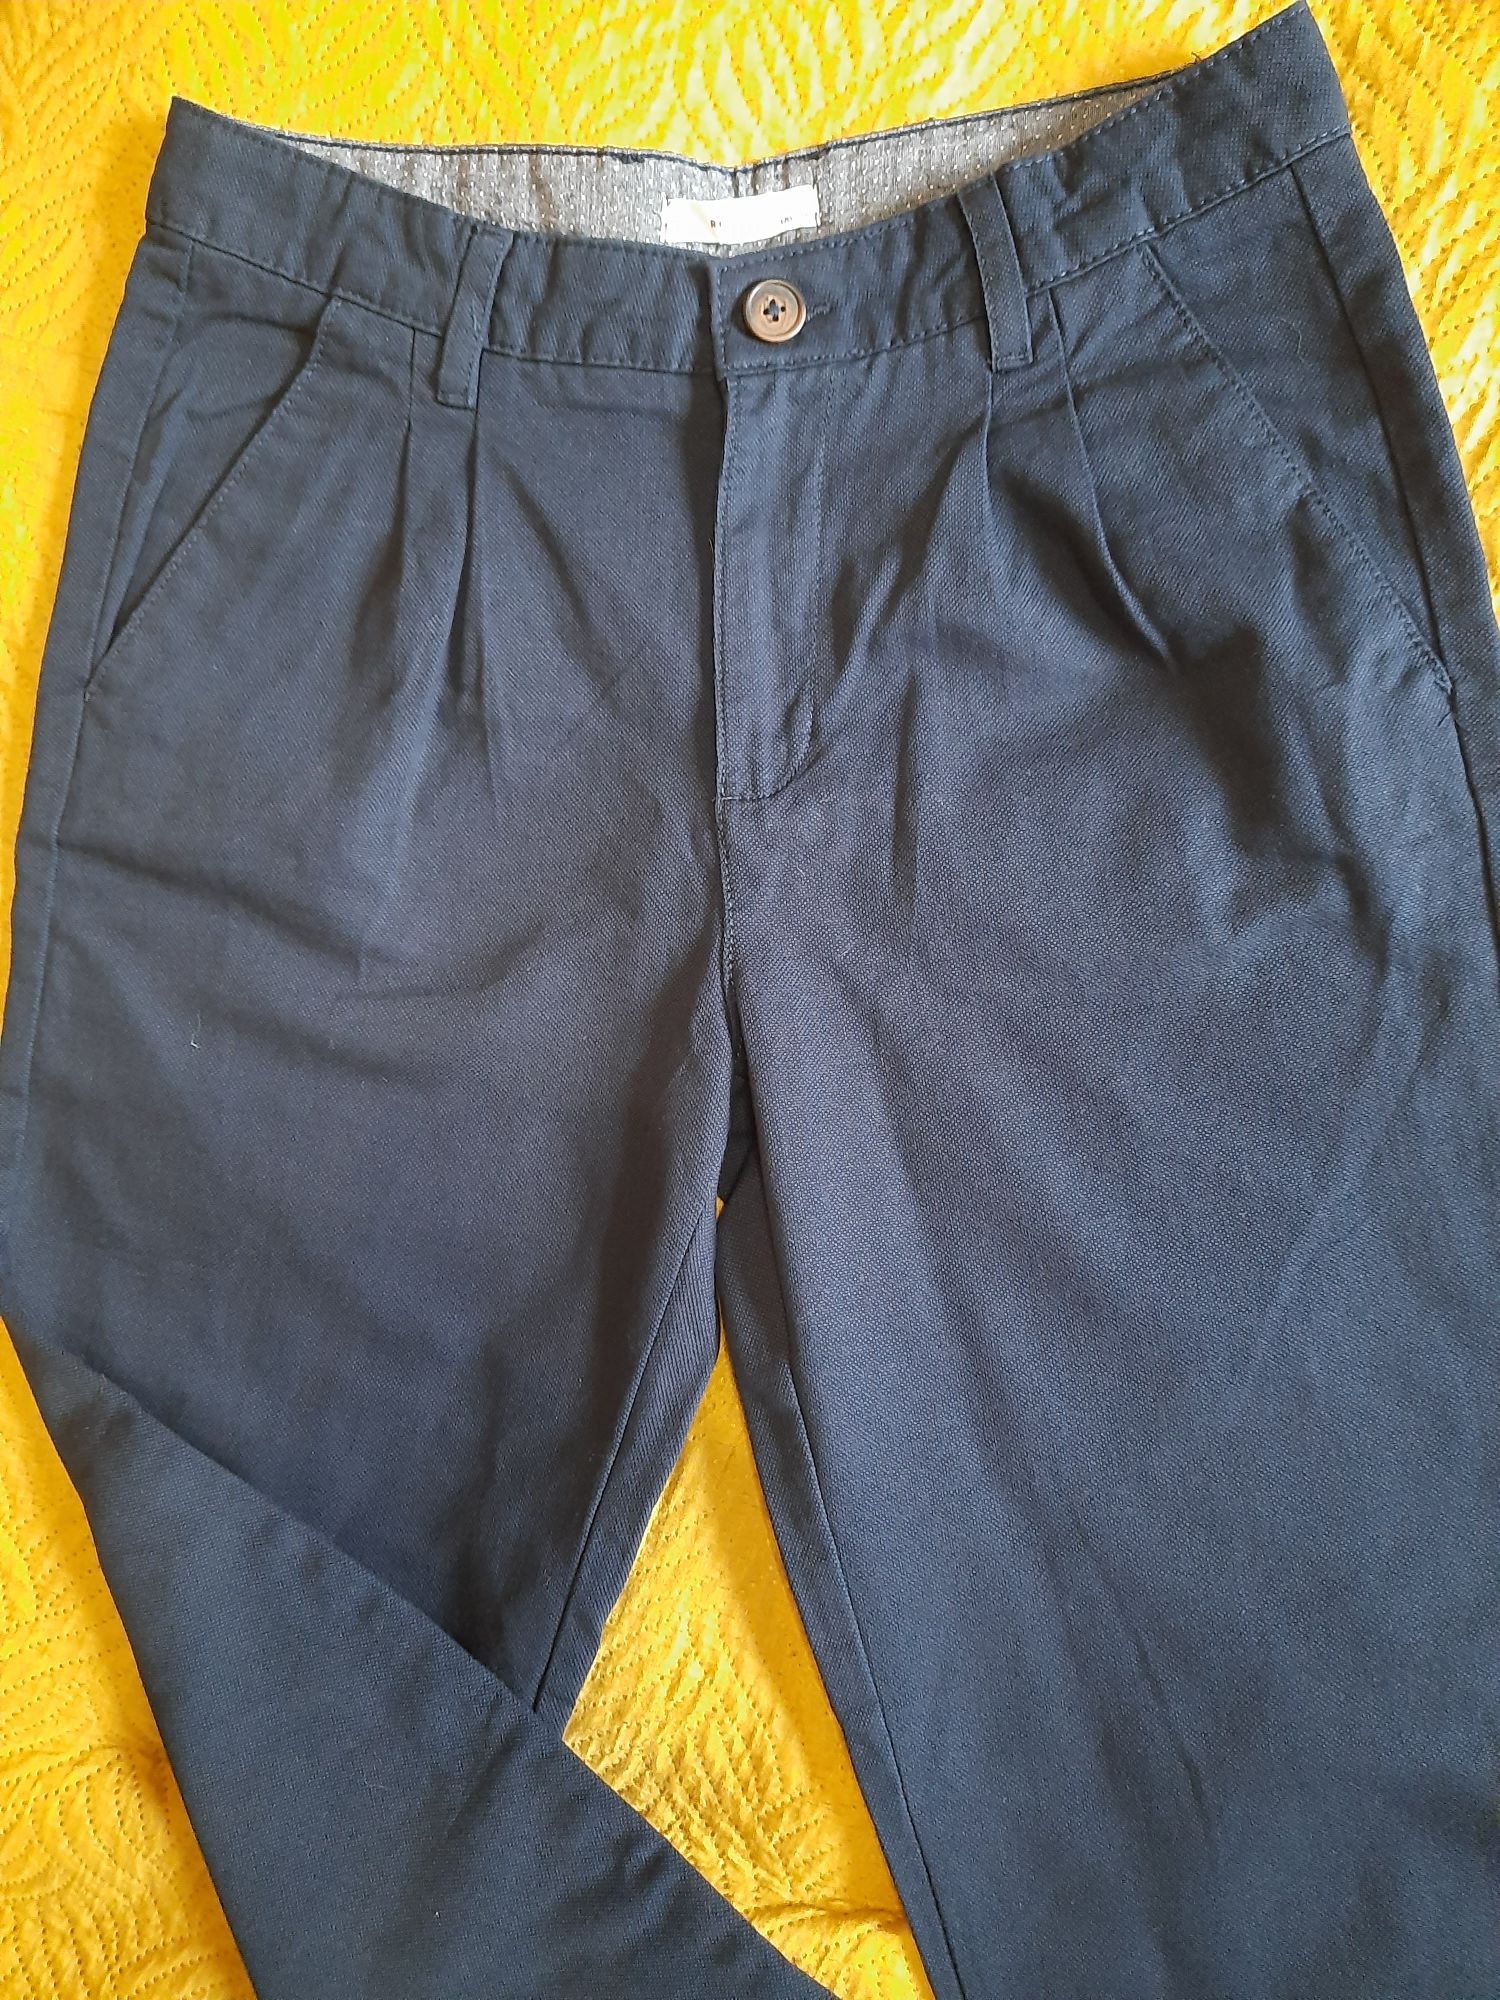 Reserved spodnie 2pary, materiałowe, r.170.